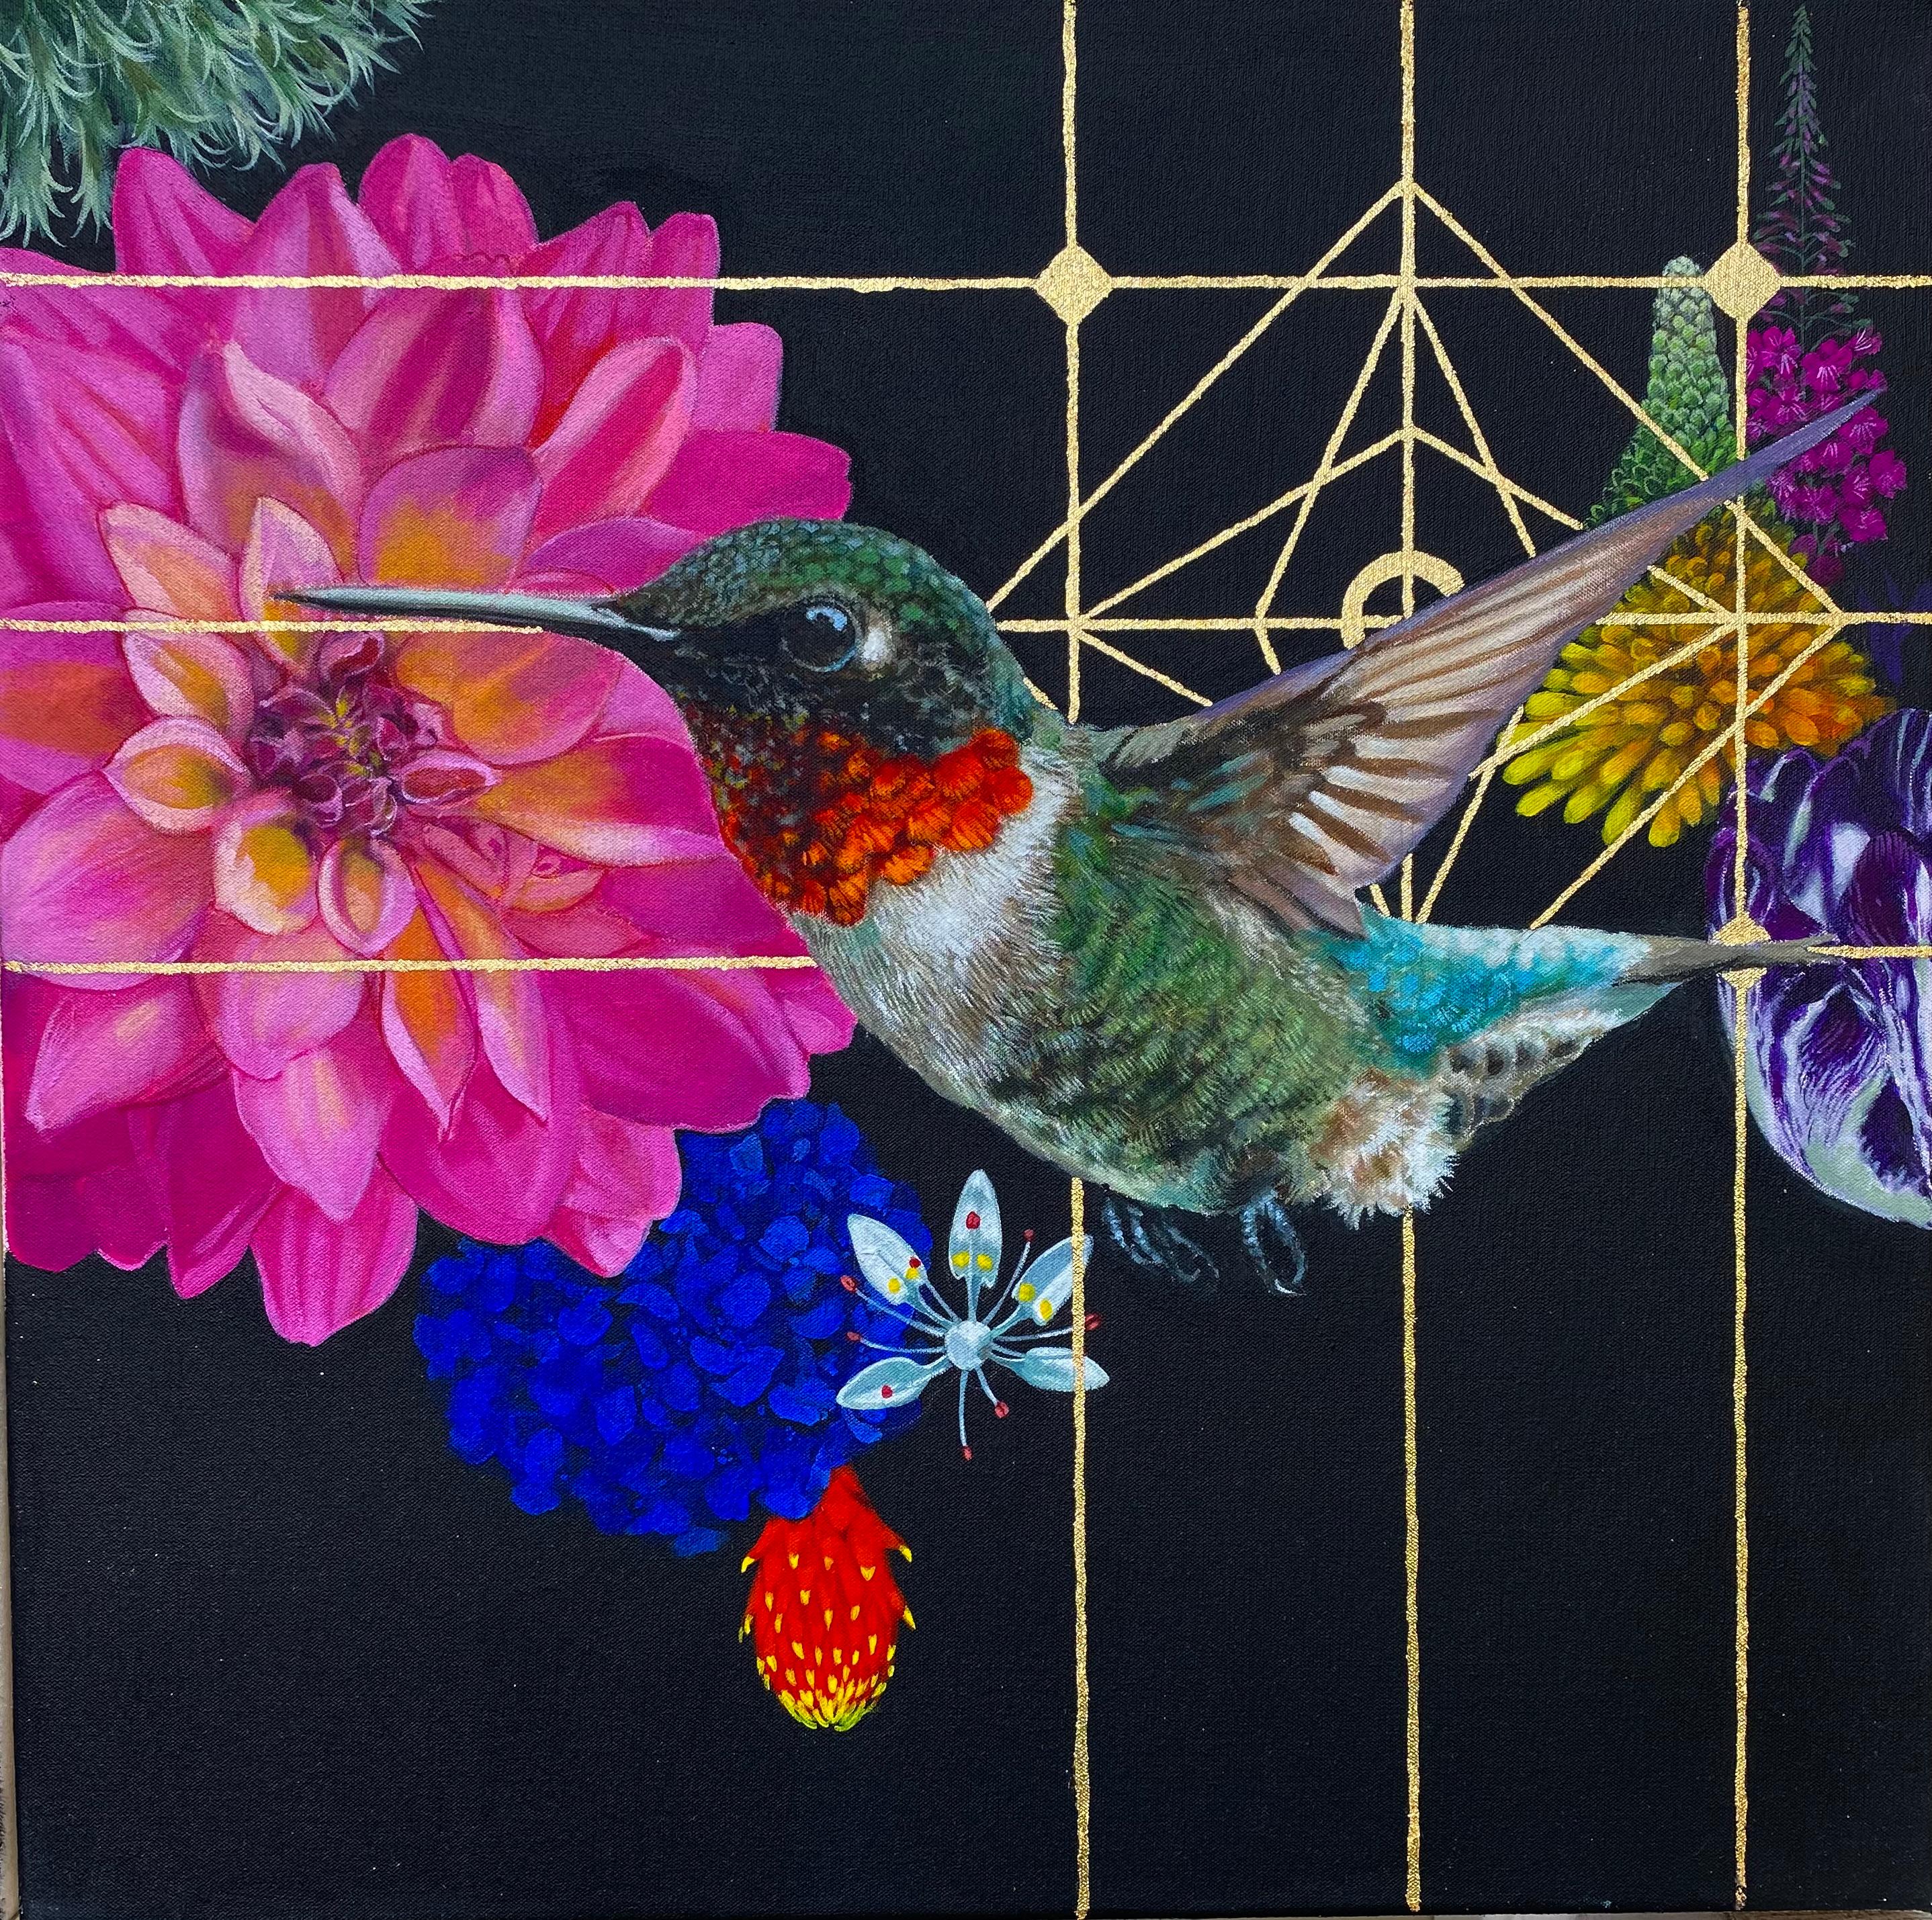 LOUIS VUITTON Dobermans 2019  Art inspiration painting, Colorful